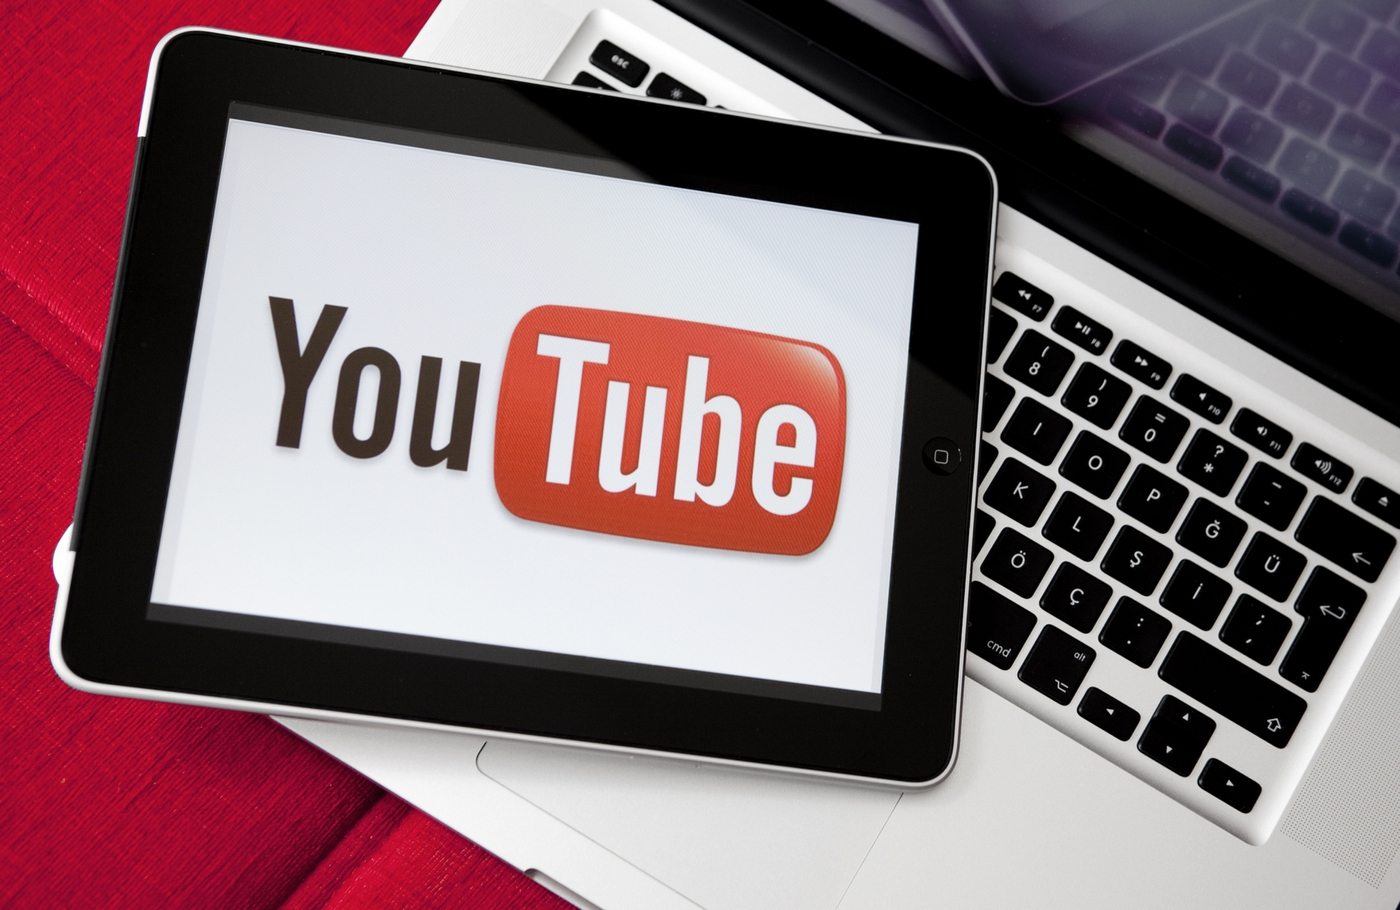 Un milliard de vidéos sont visionnées chaque jour sur YouTube. © ozgurdonmaz / IStock.com